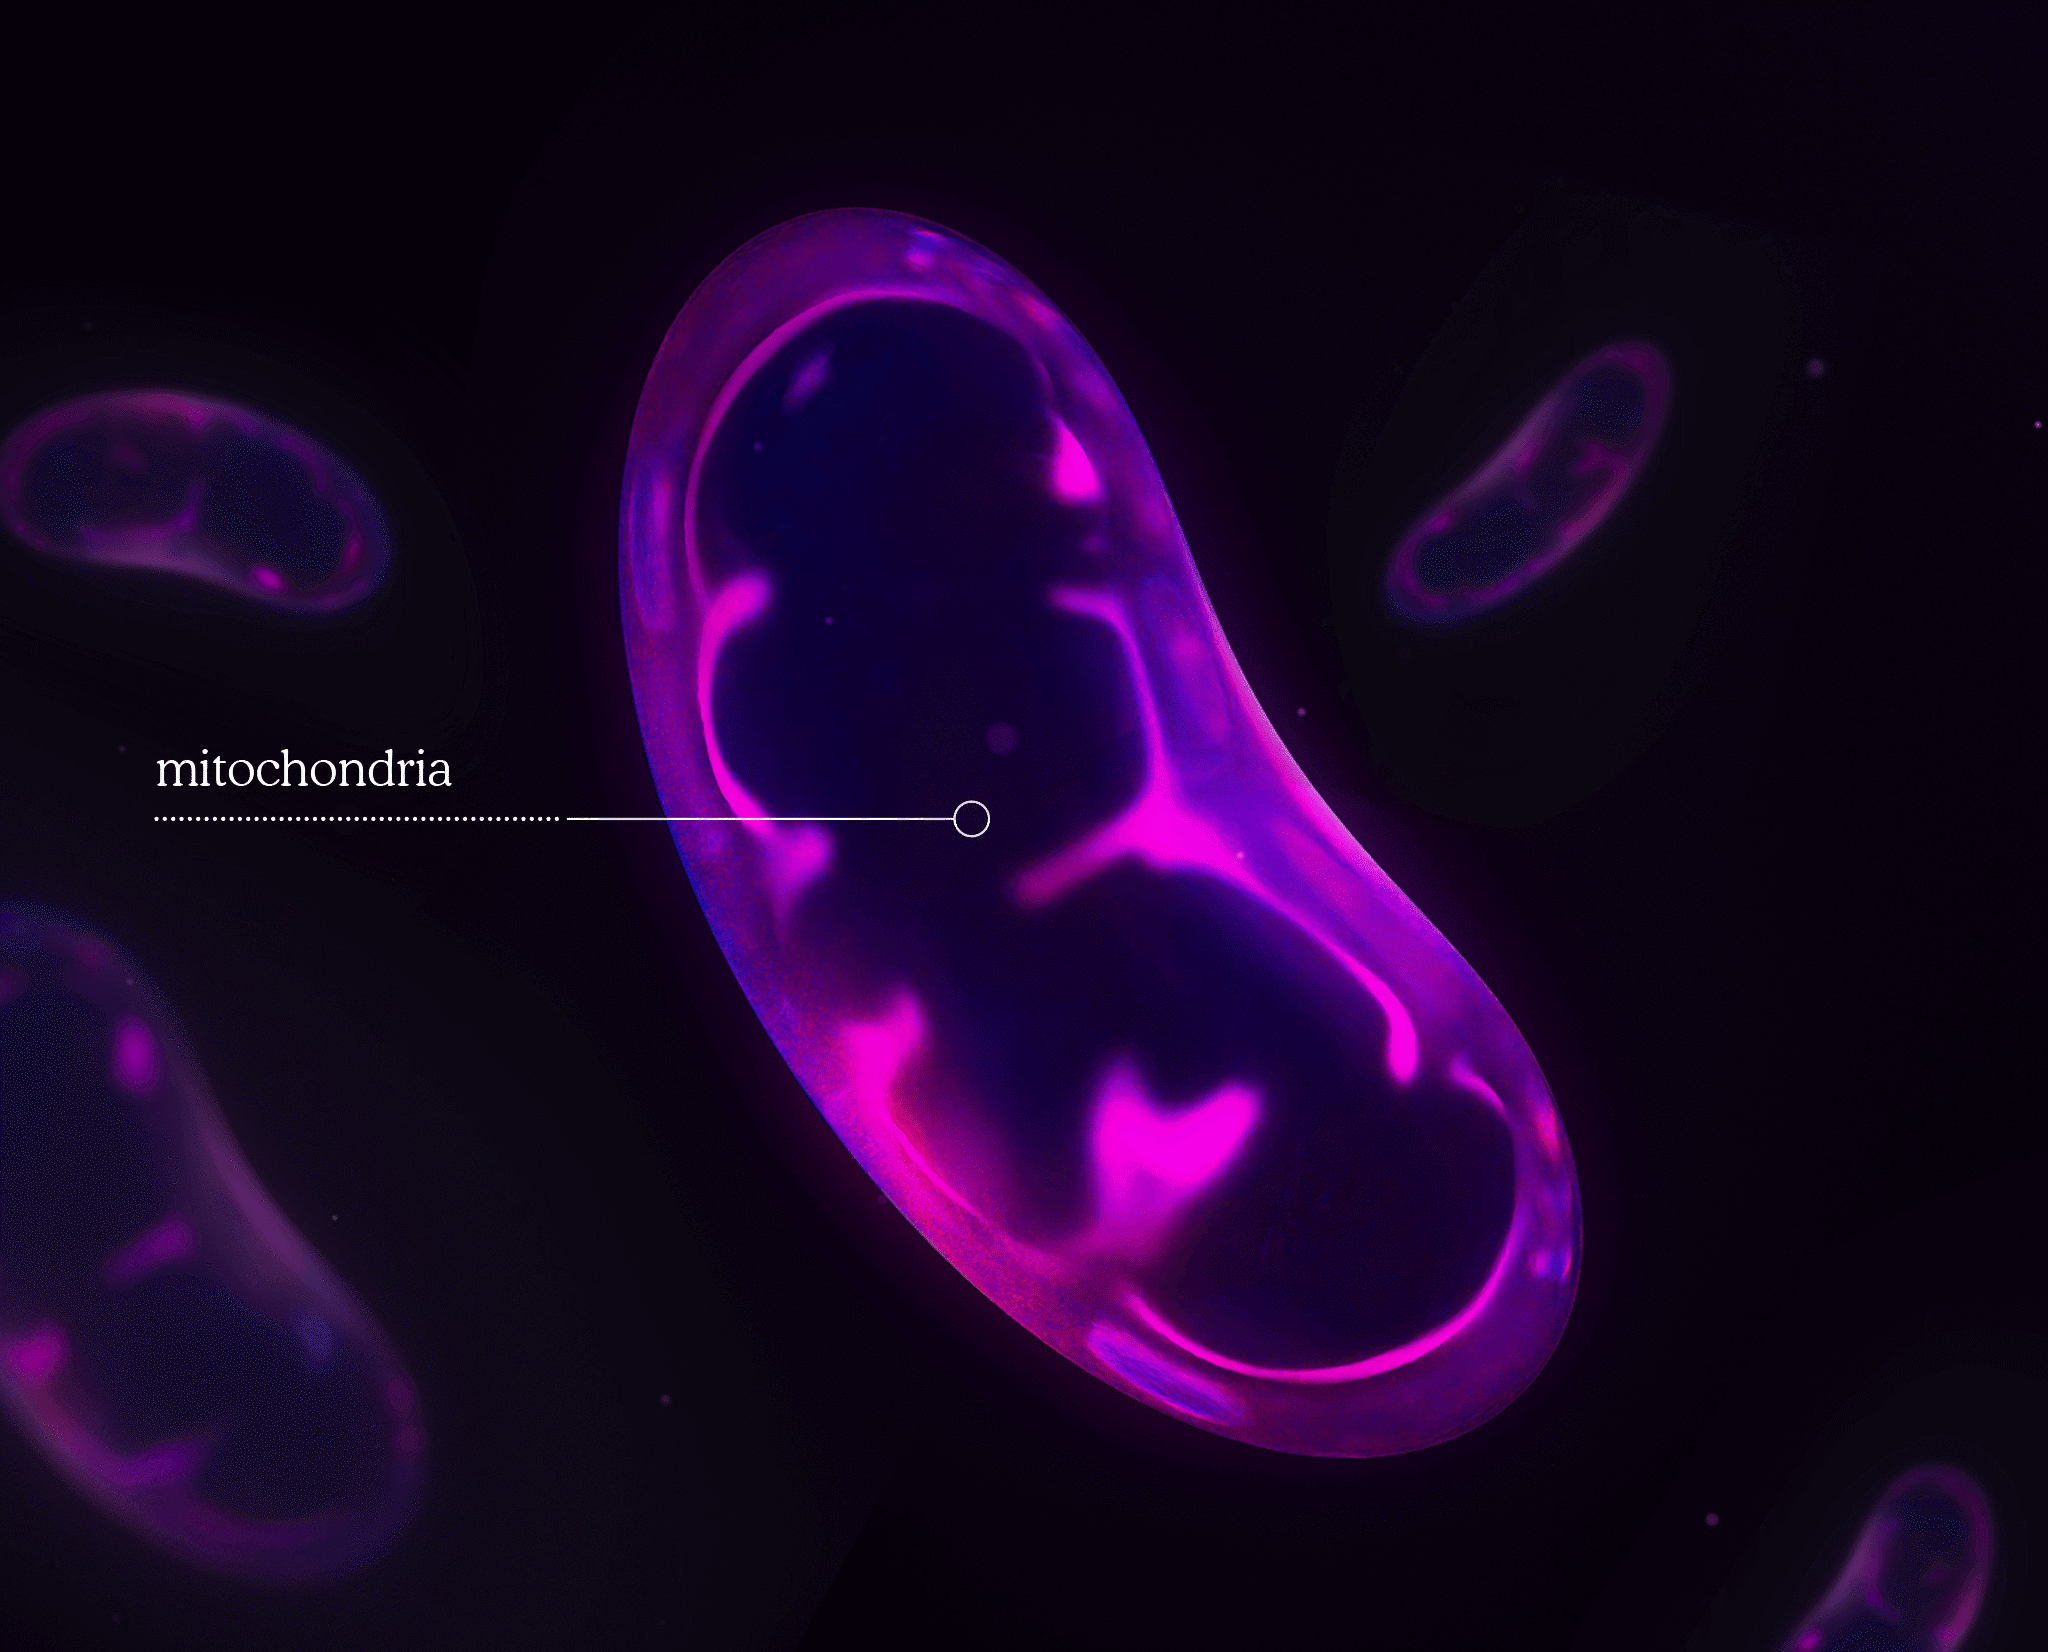 mitochondria illustration in purple